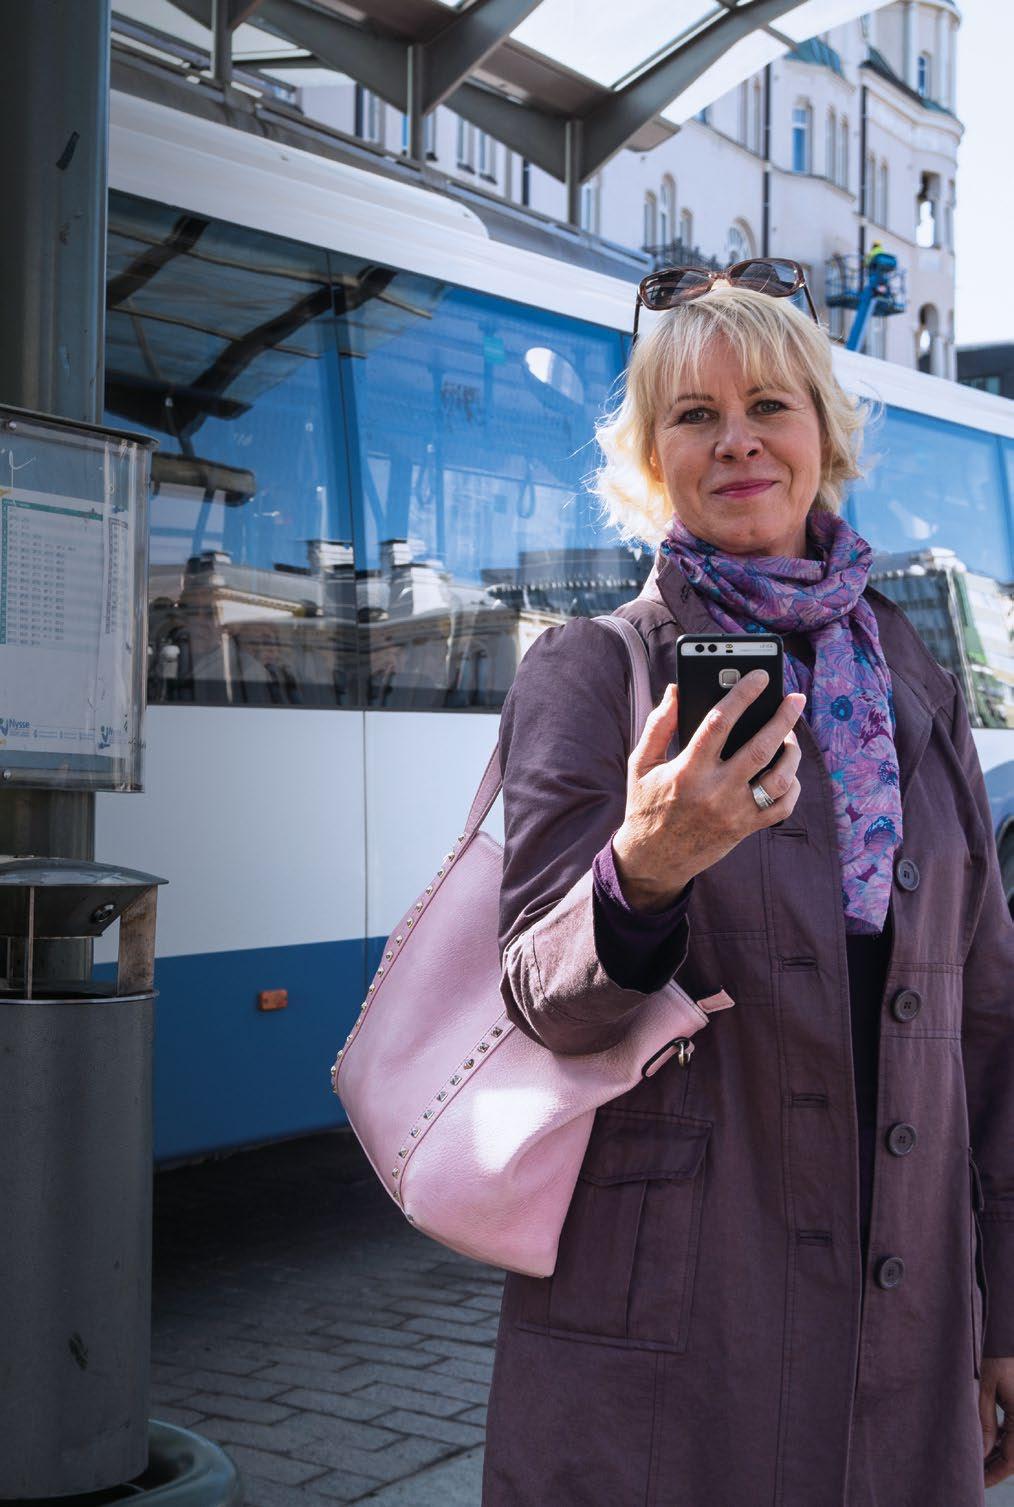 Matkalla kanssasi Tampereen joukkoliikenteen asiakaslehti 1/2019 Nysse Mobiili tuo matkalipun ja reittioppaan puhelimeen s.